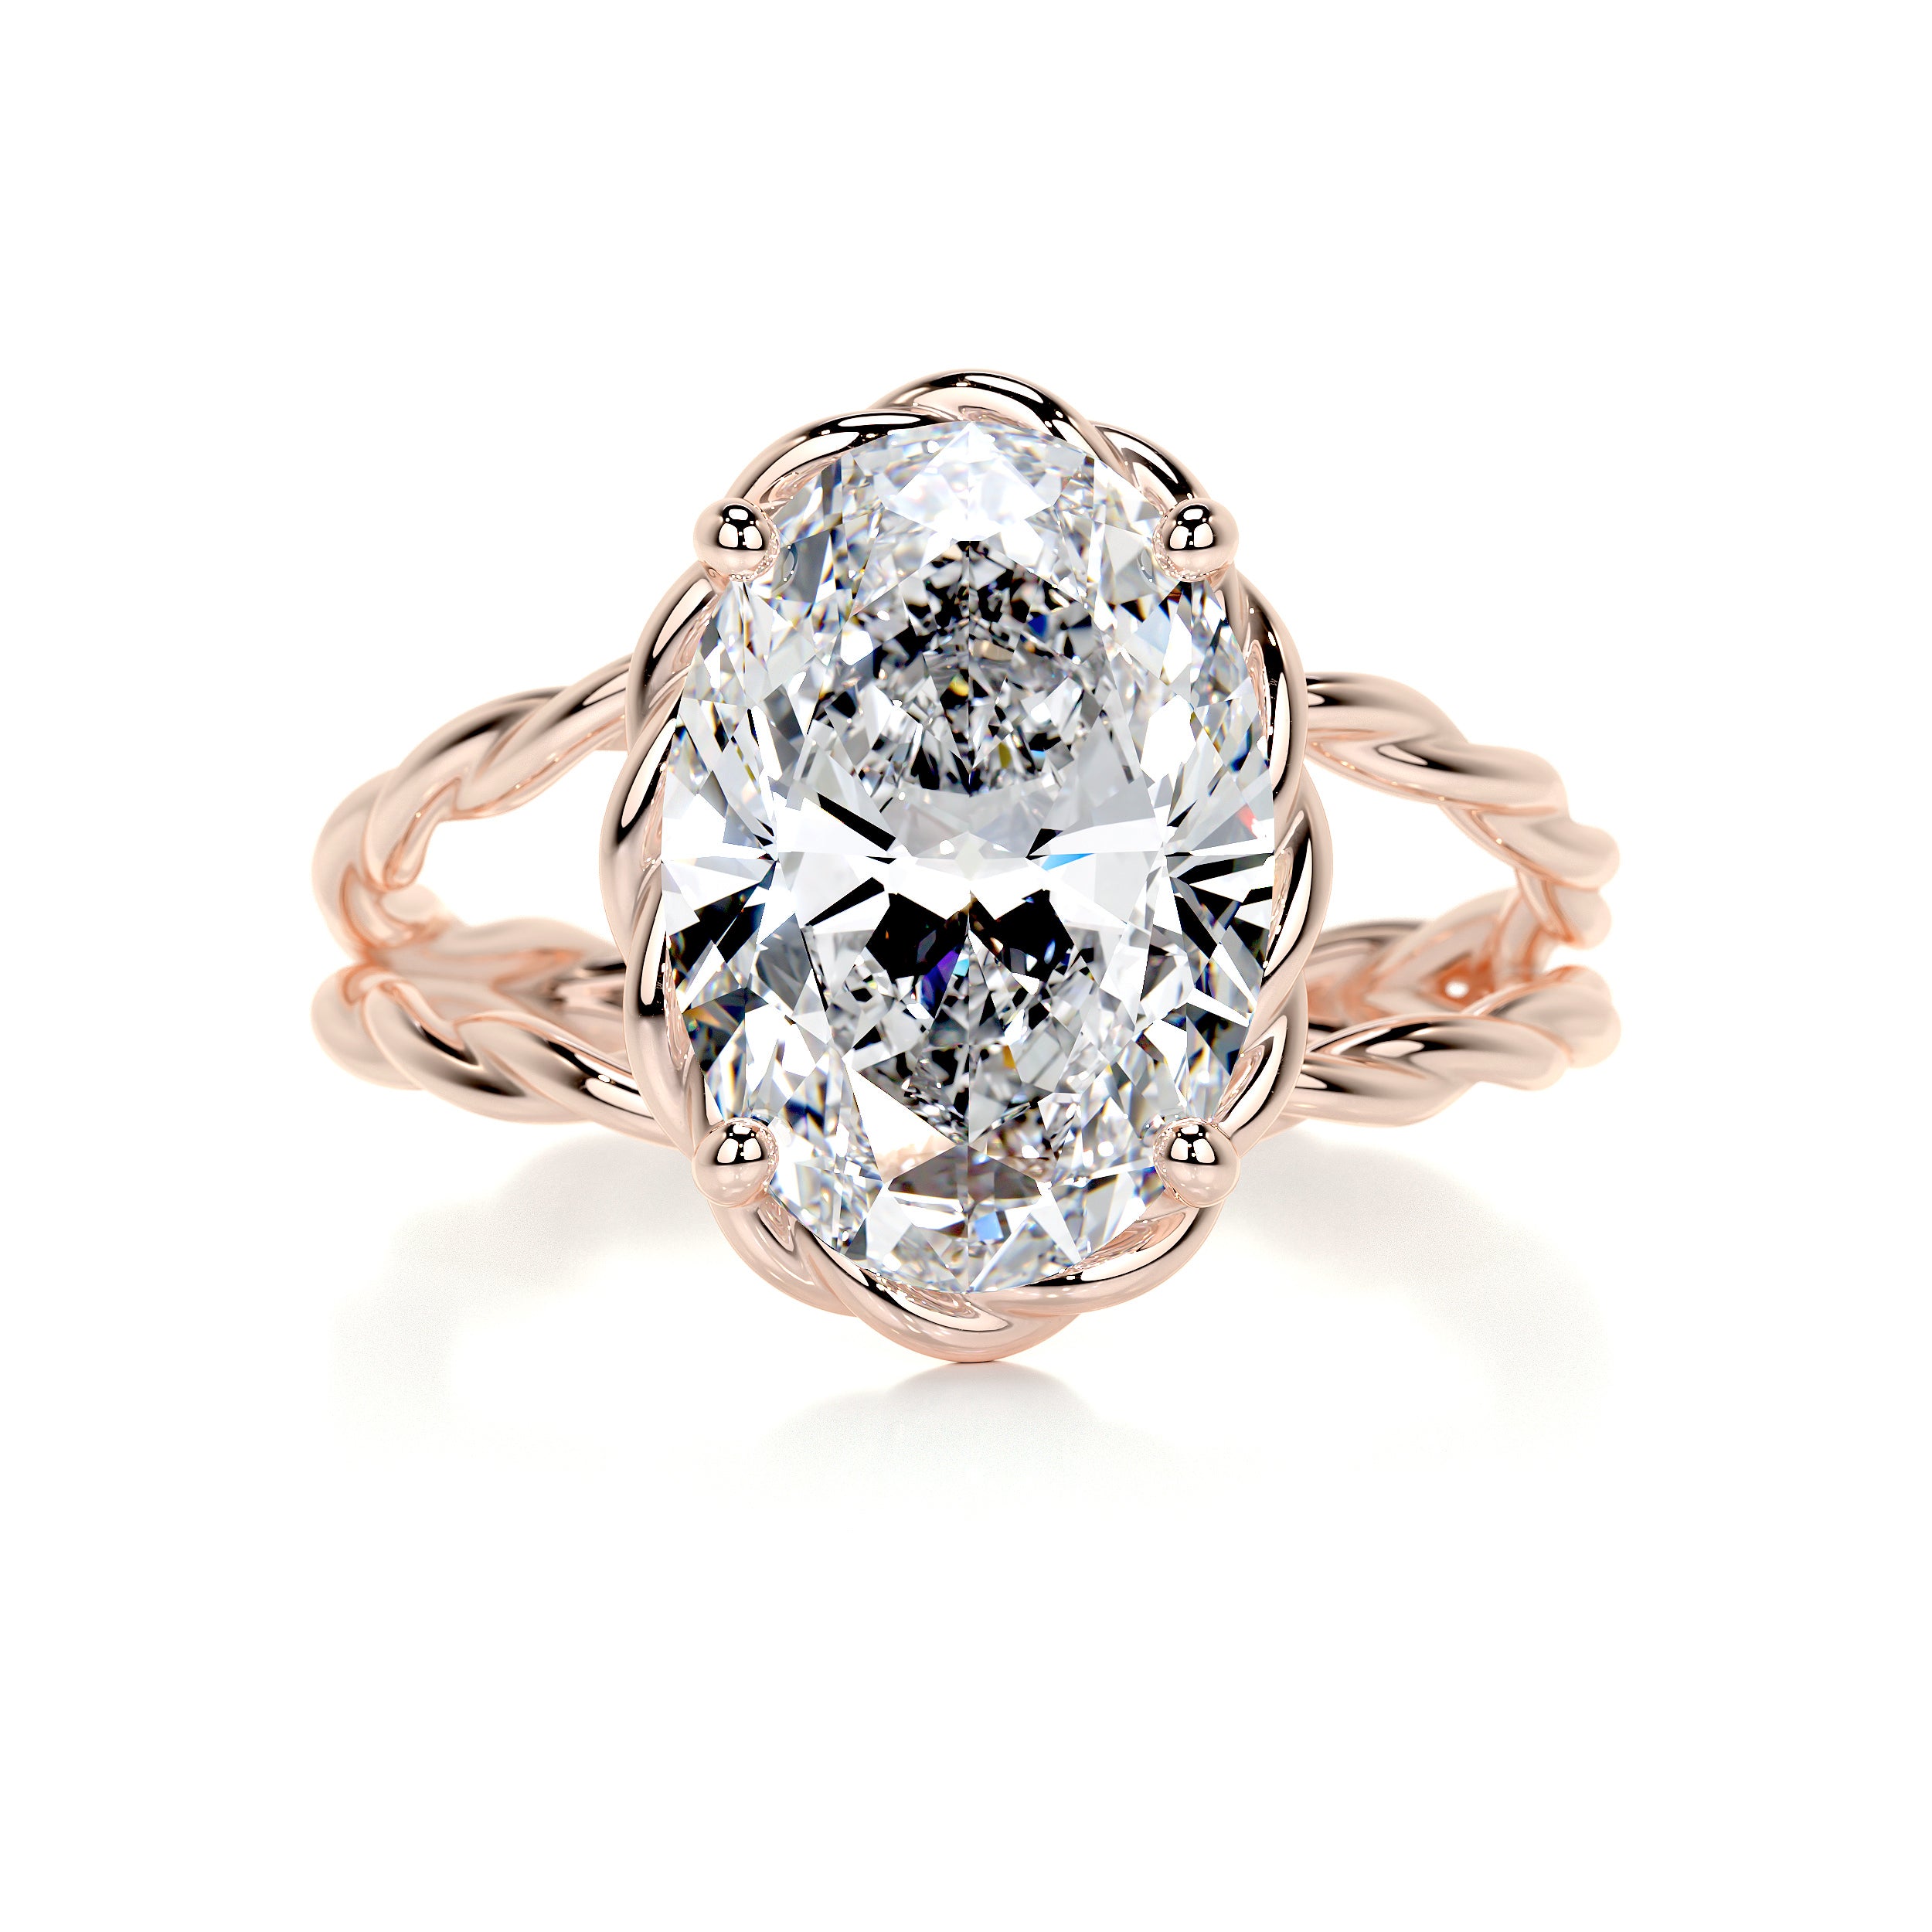 Milani Diamond Engagement Ring   (3 Carat) -14K Rose Gold